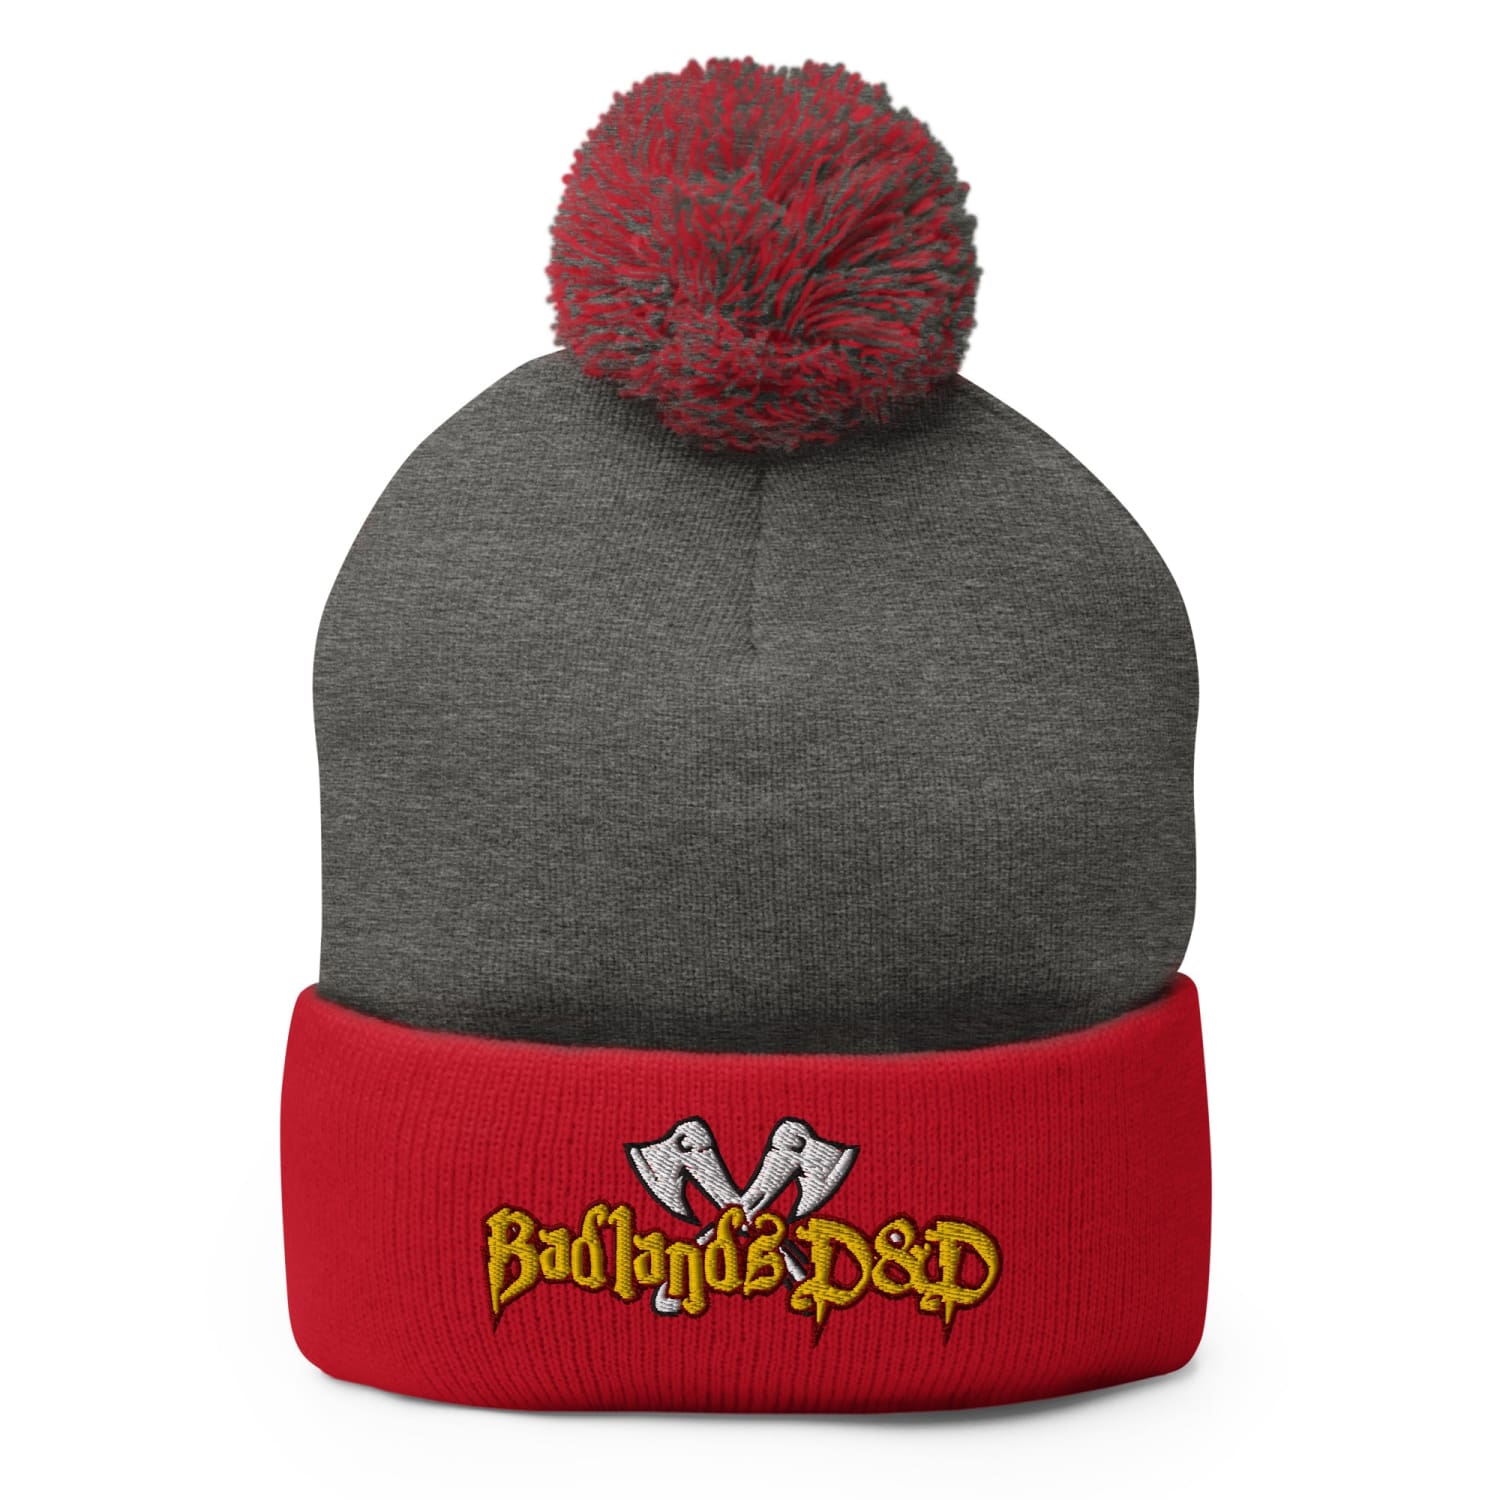 Badlands D&D Logo Pom-Pom Knit Beanie / Tuque - Dark Heather Grey/ Red